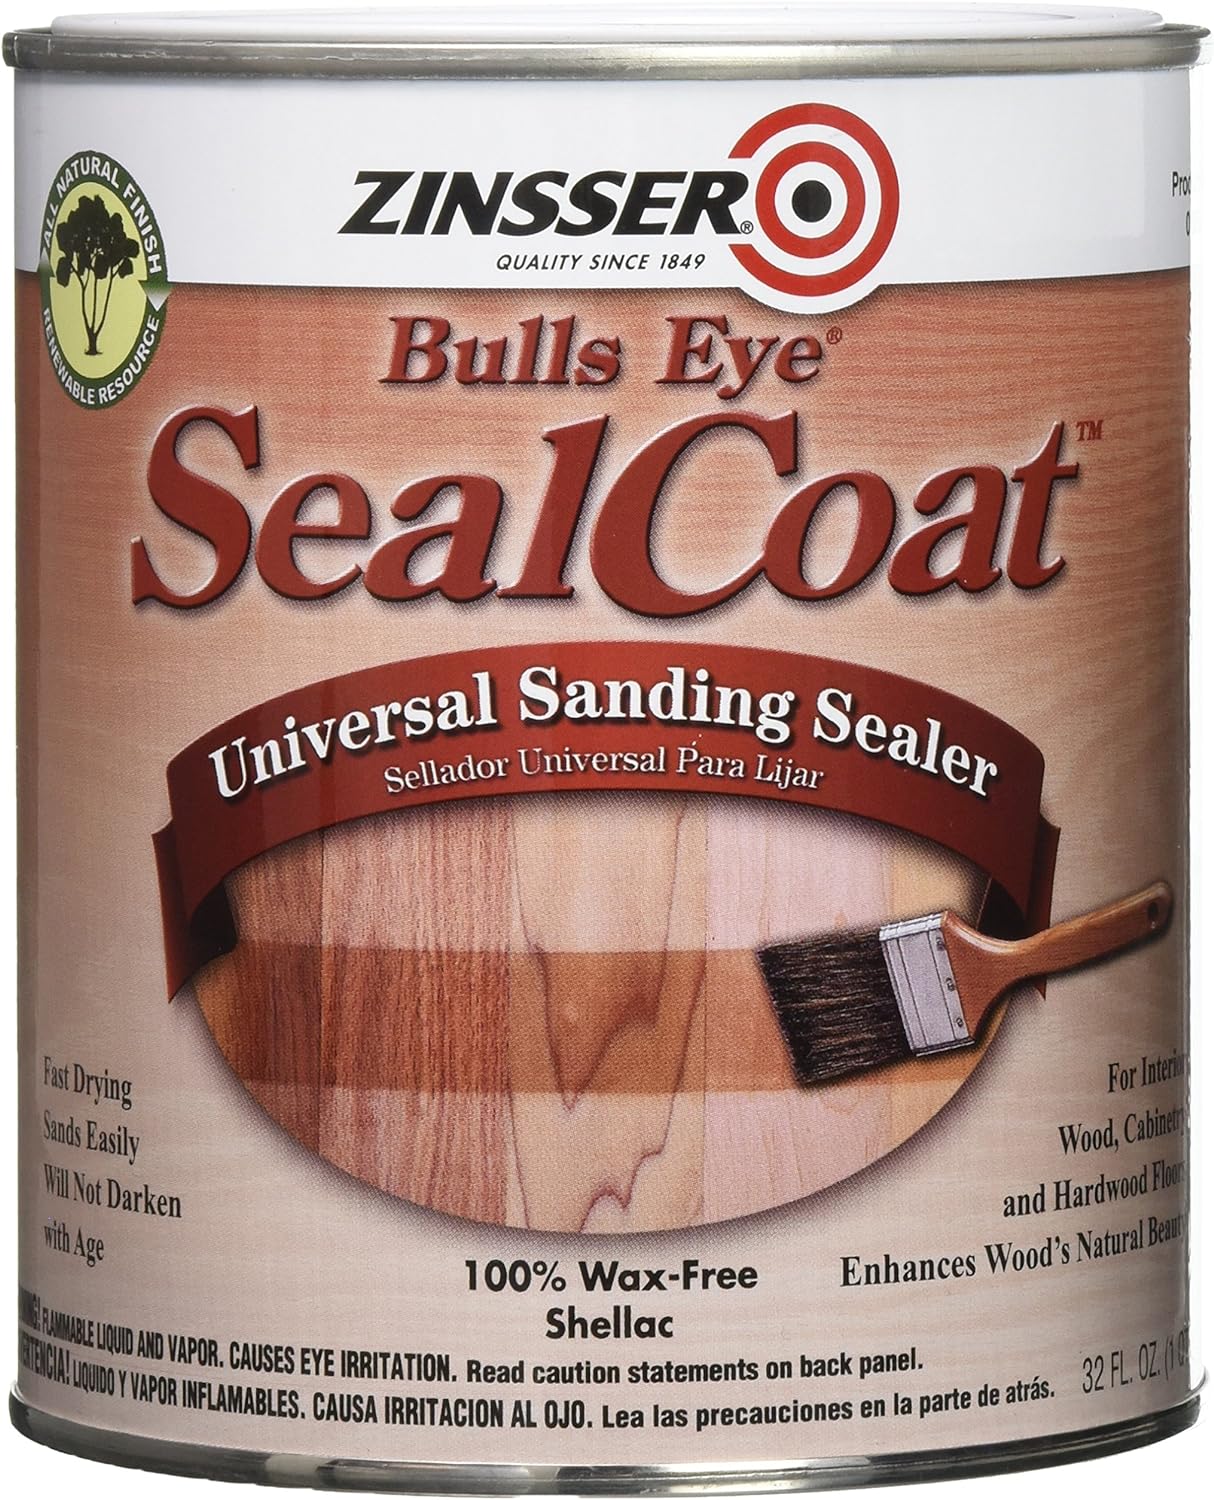 Rust-Oleum Zinsser 854 1-Quart Bulls Eye Sealcoat Universal Sanding Sealer, 32 Fl Oz